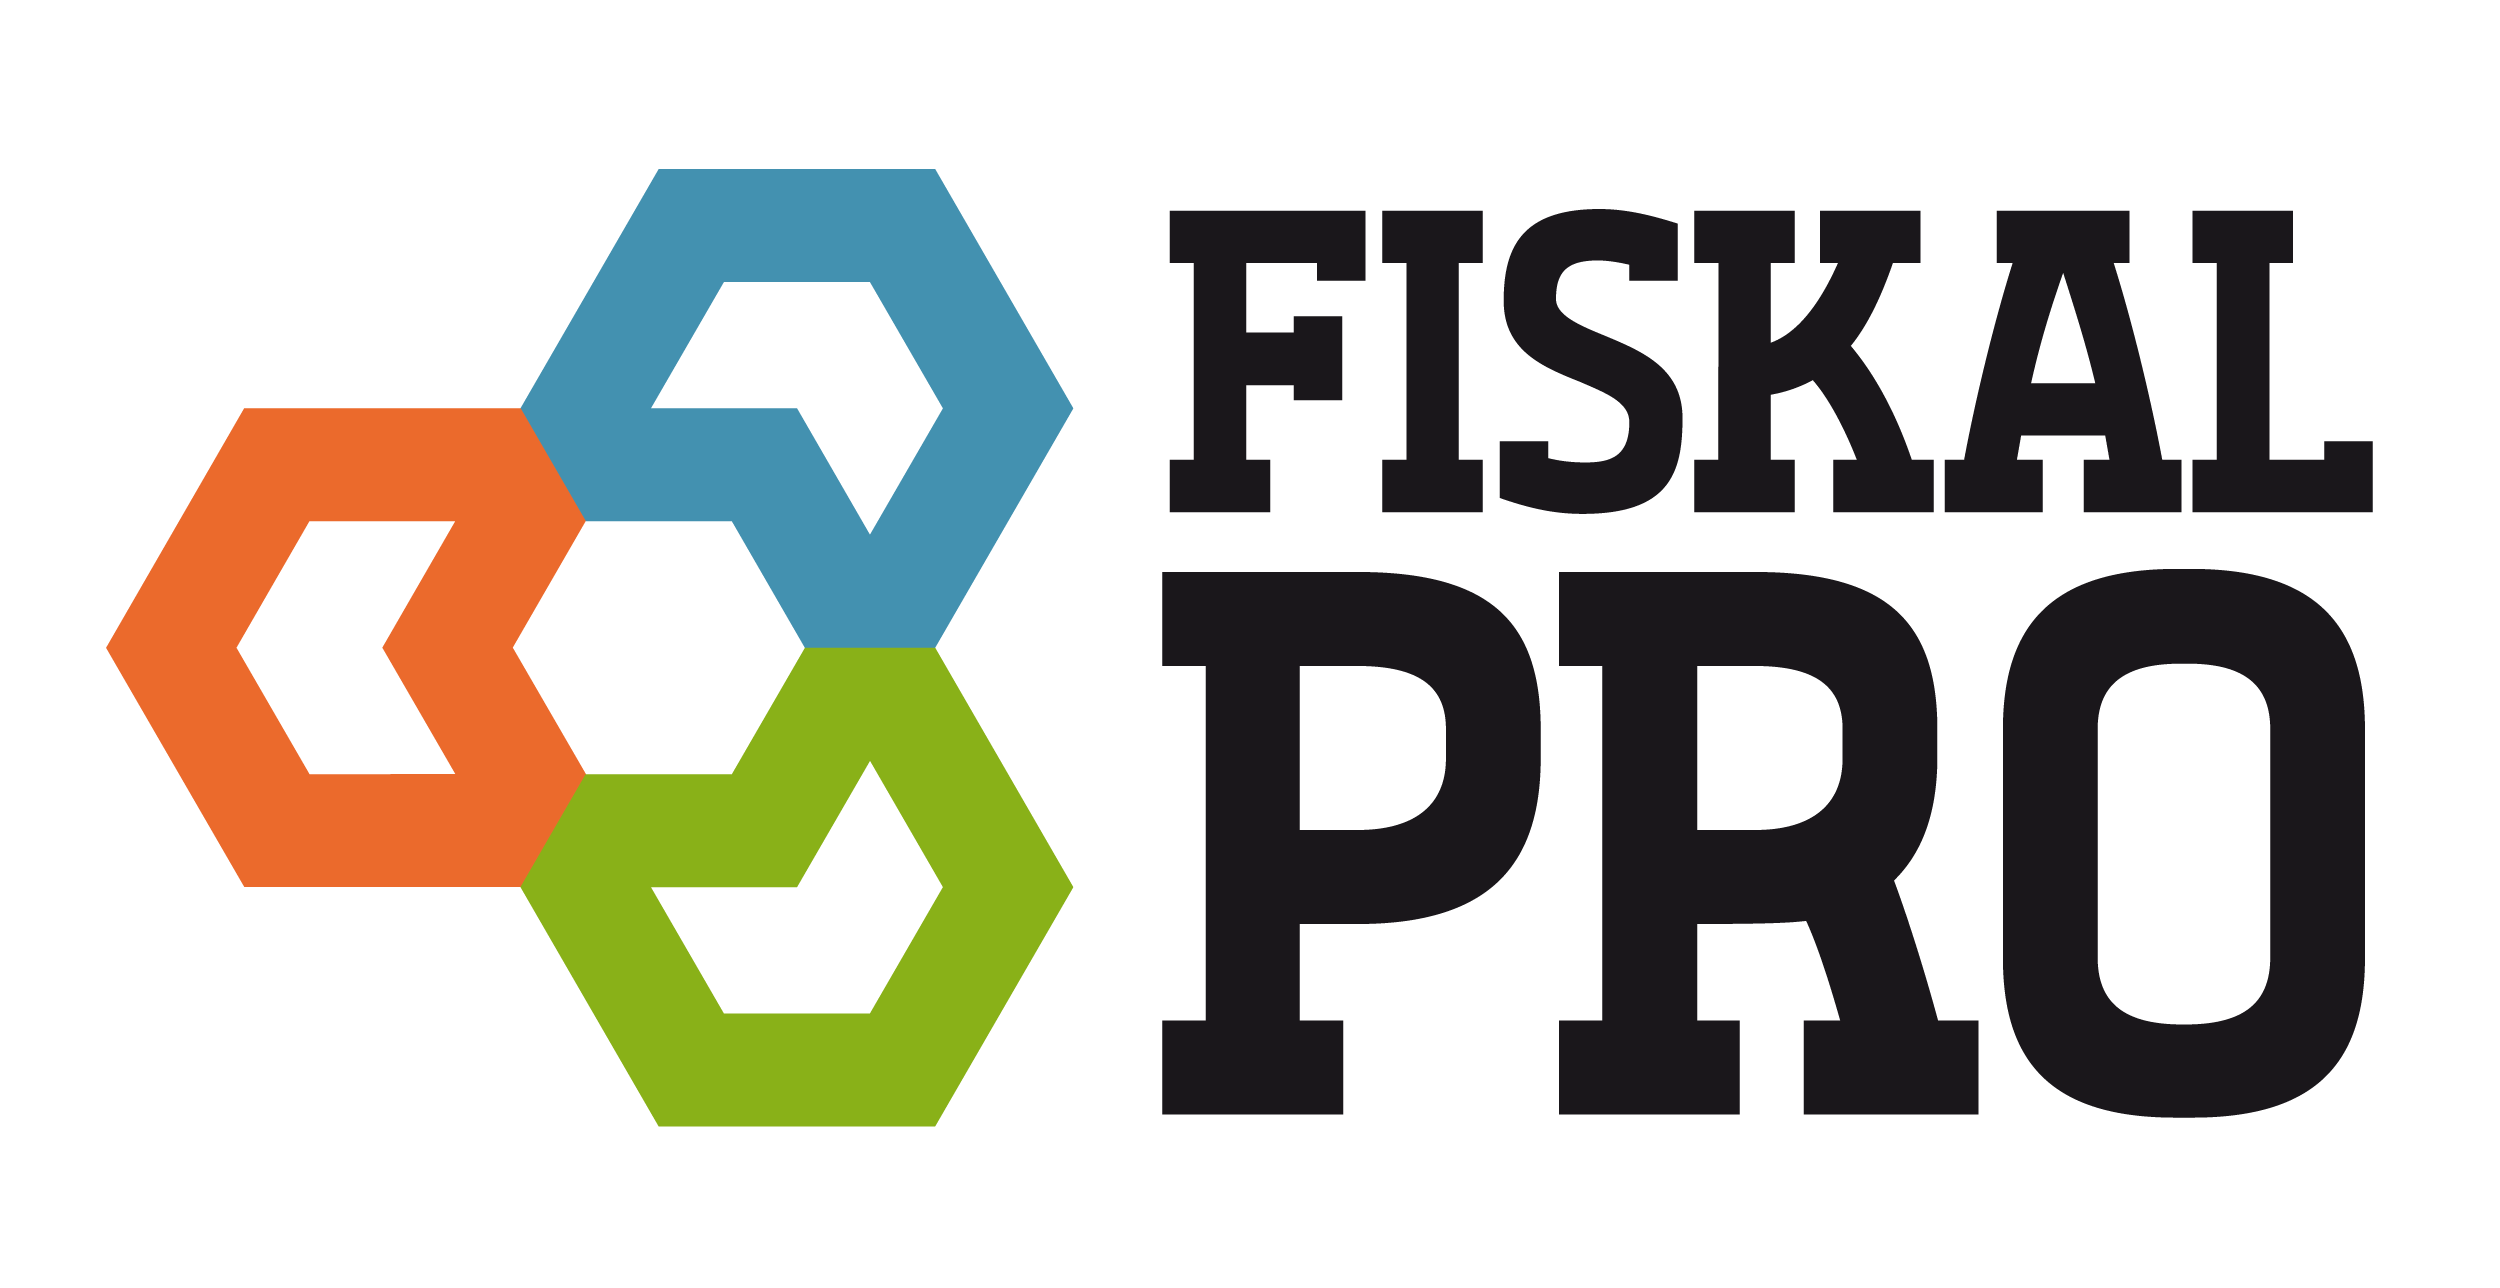 FiskalPRO logo